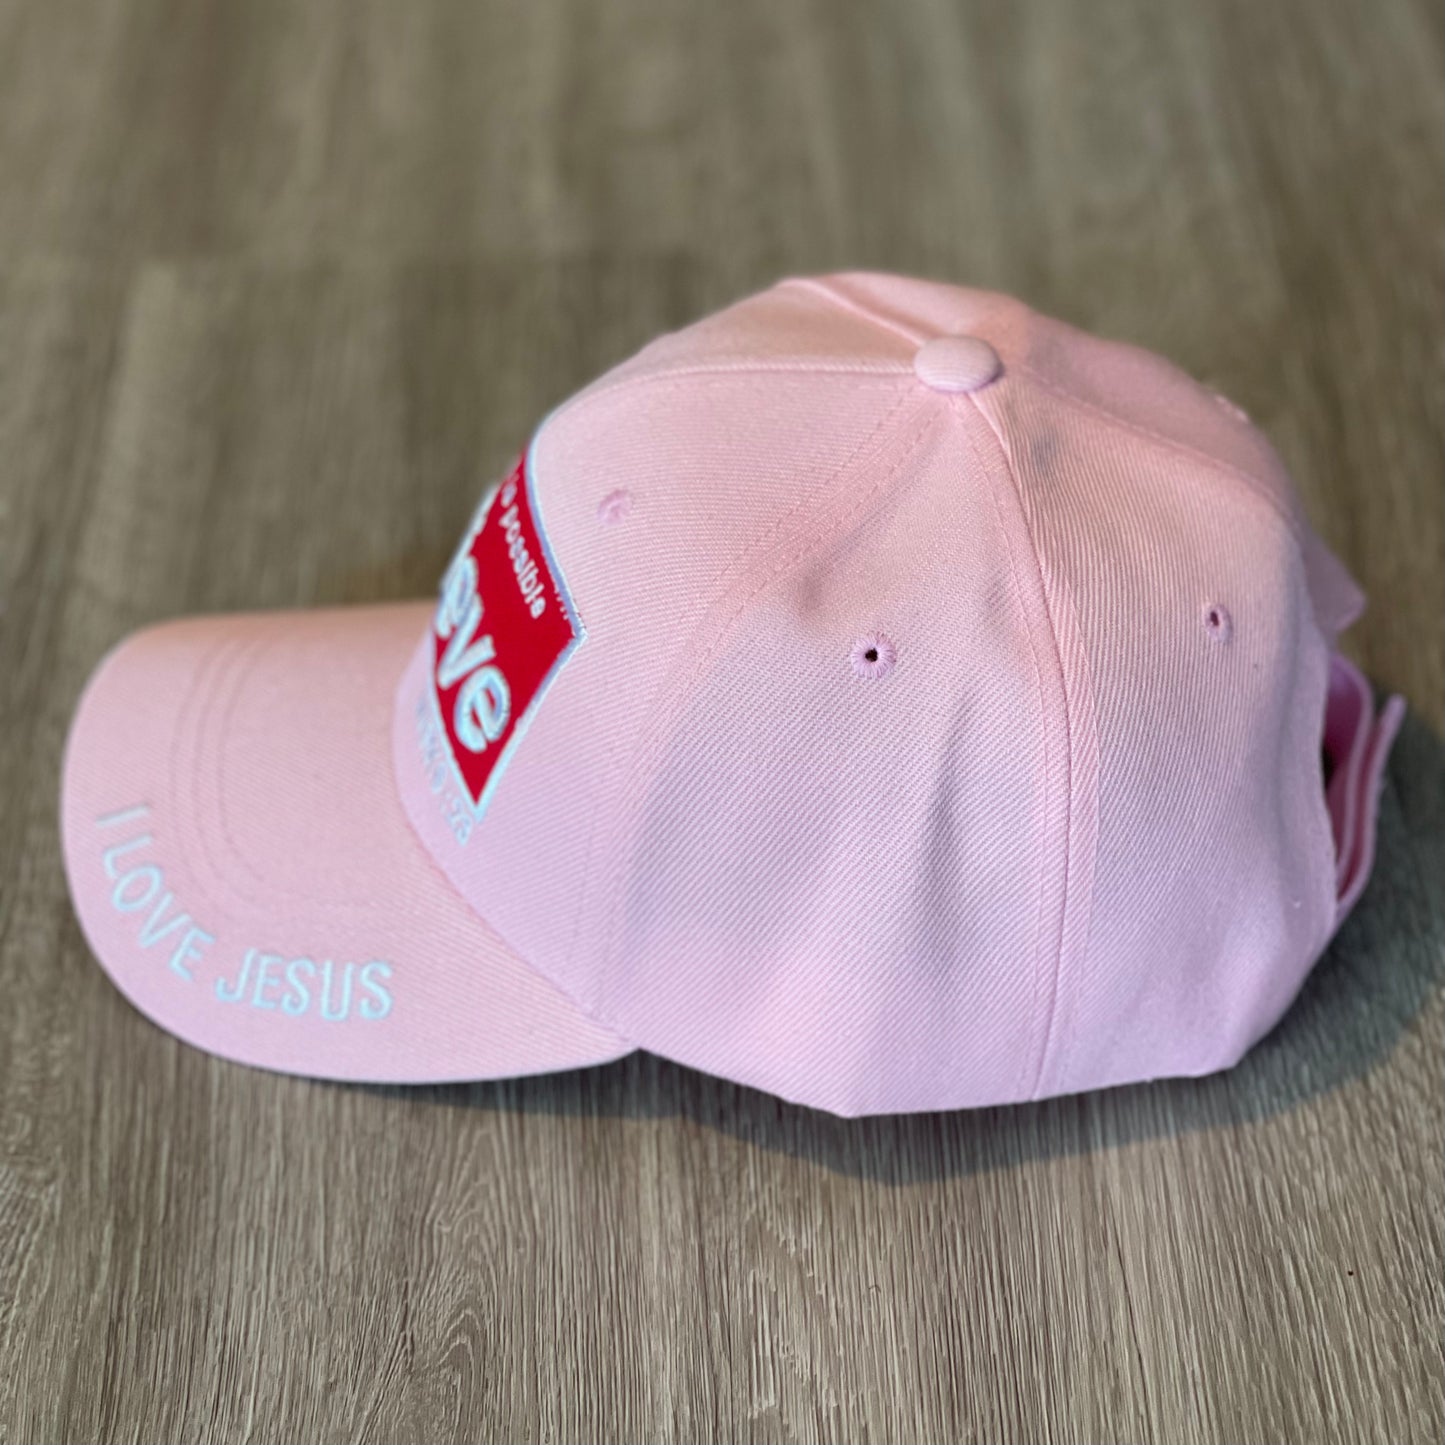 Believe Baseball Cap - Light Pink